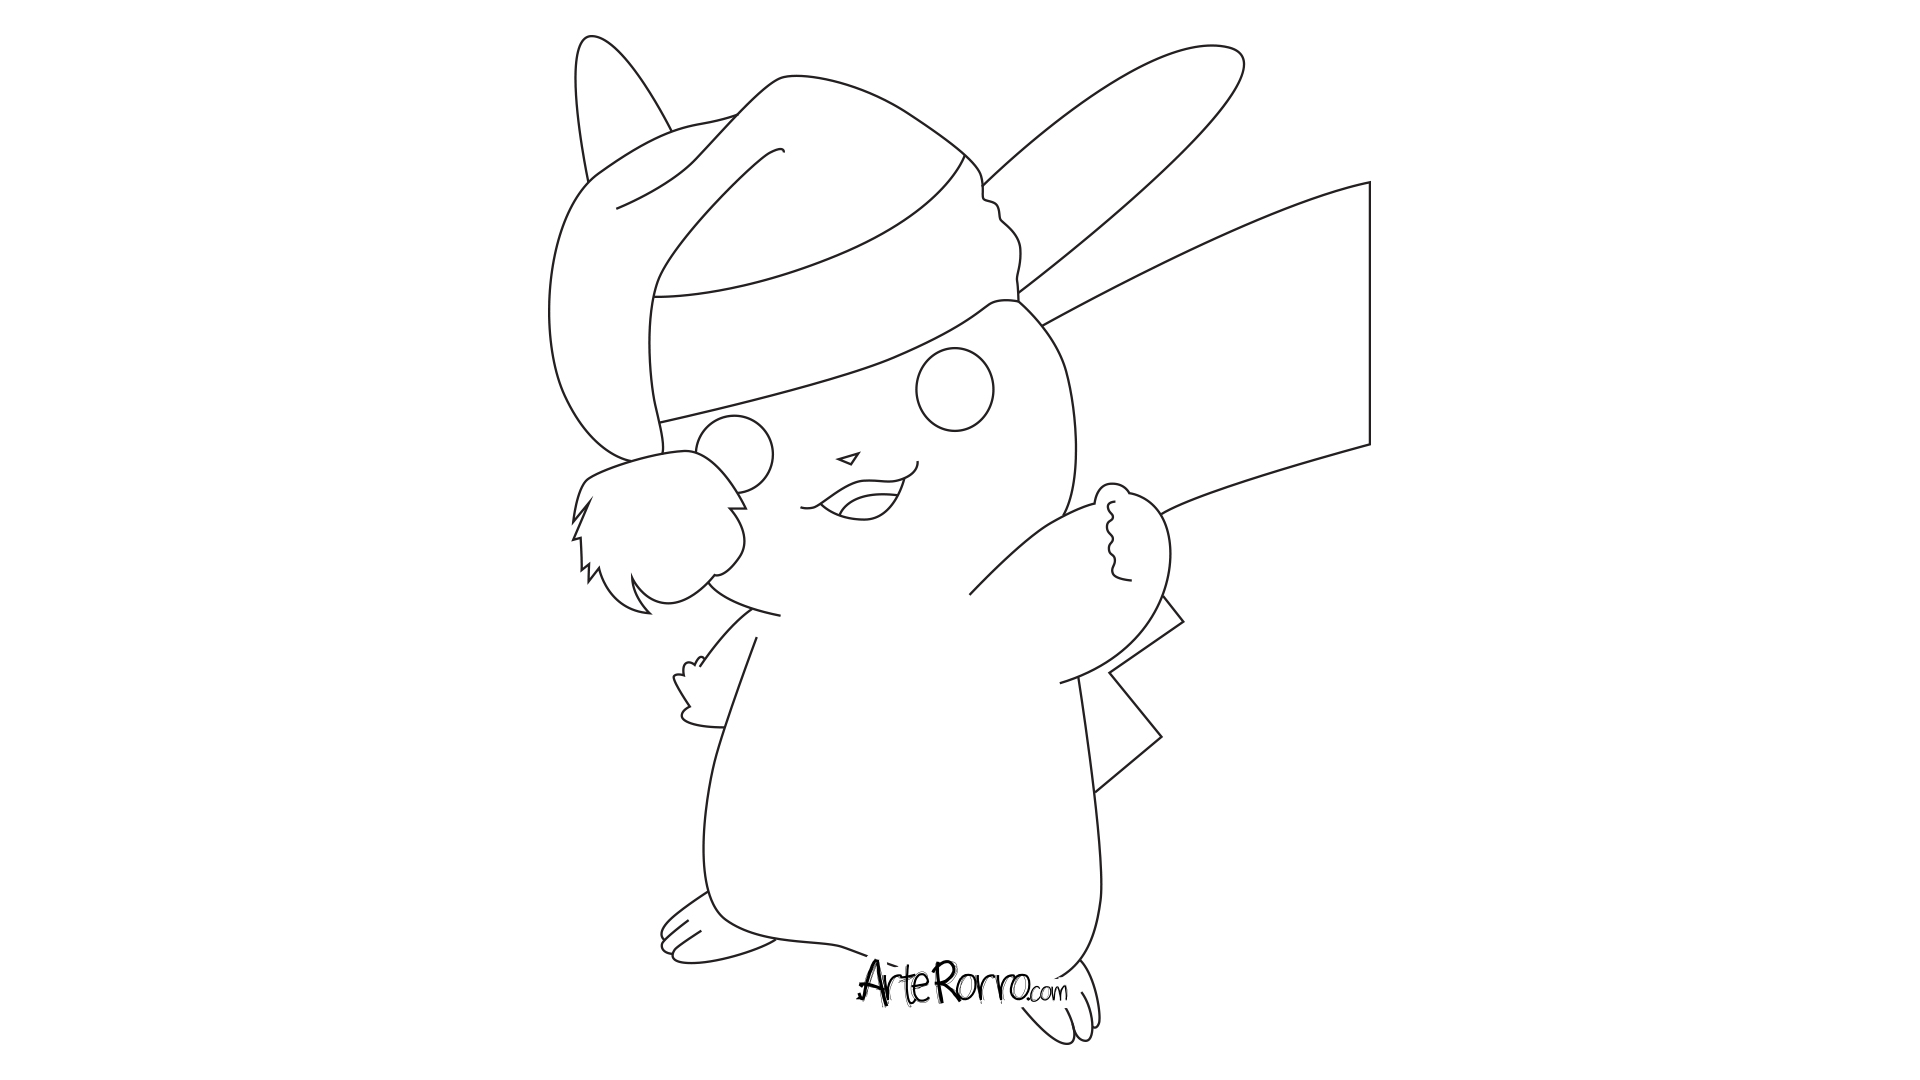 Pikachu · Arte Rorro